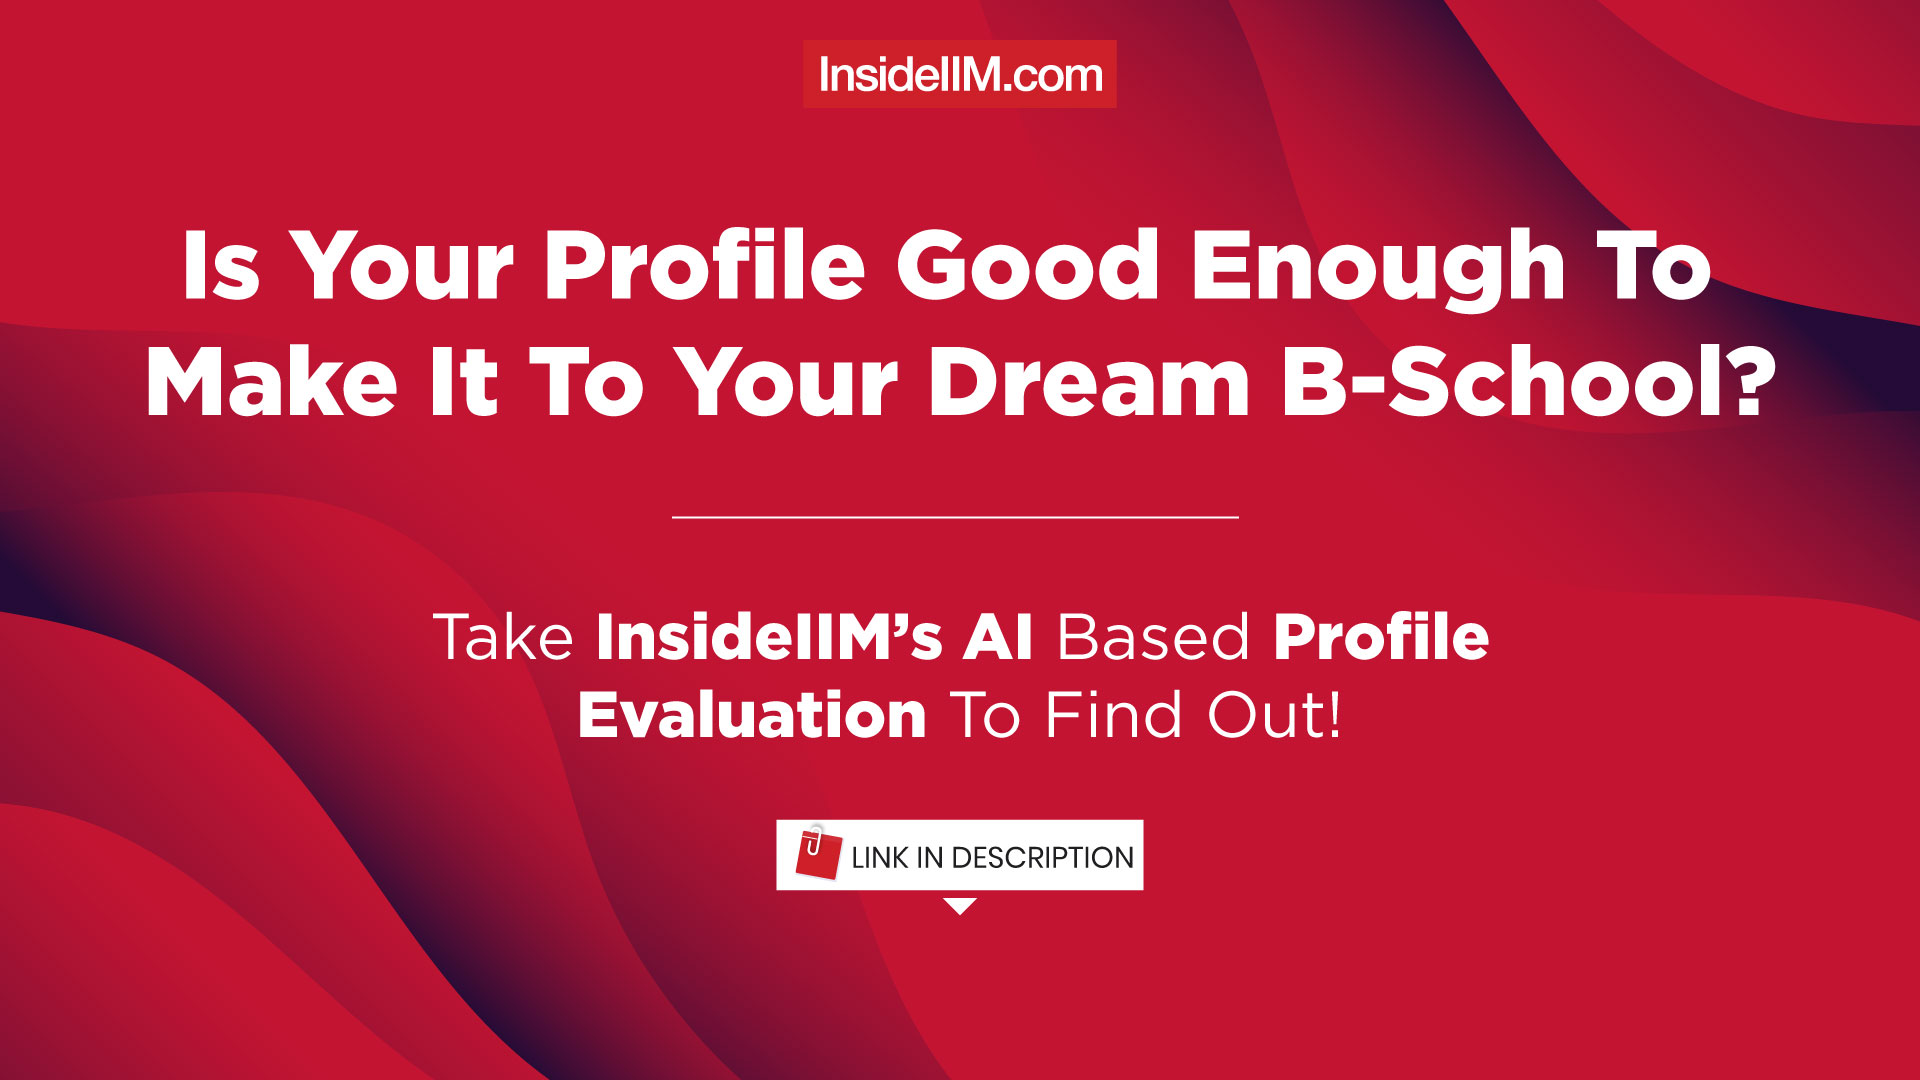 InsideIIM's AI-Based Profile Evaluation Tool